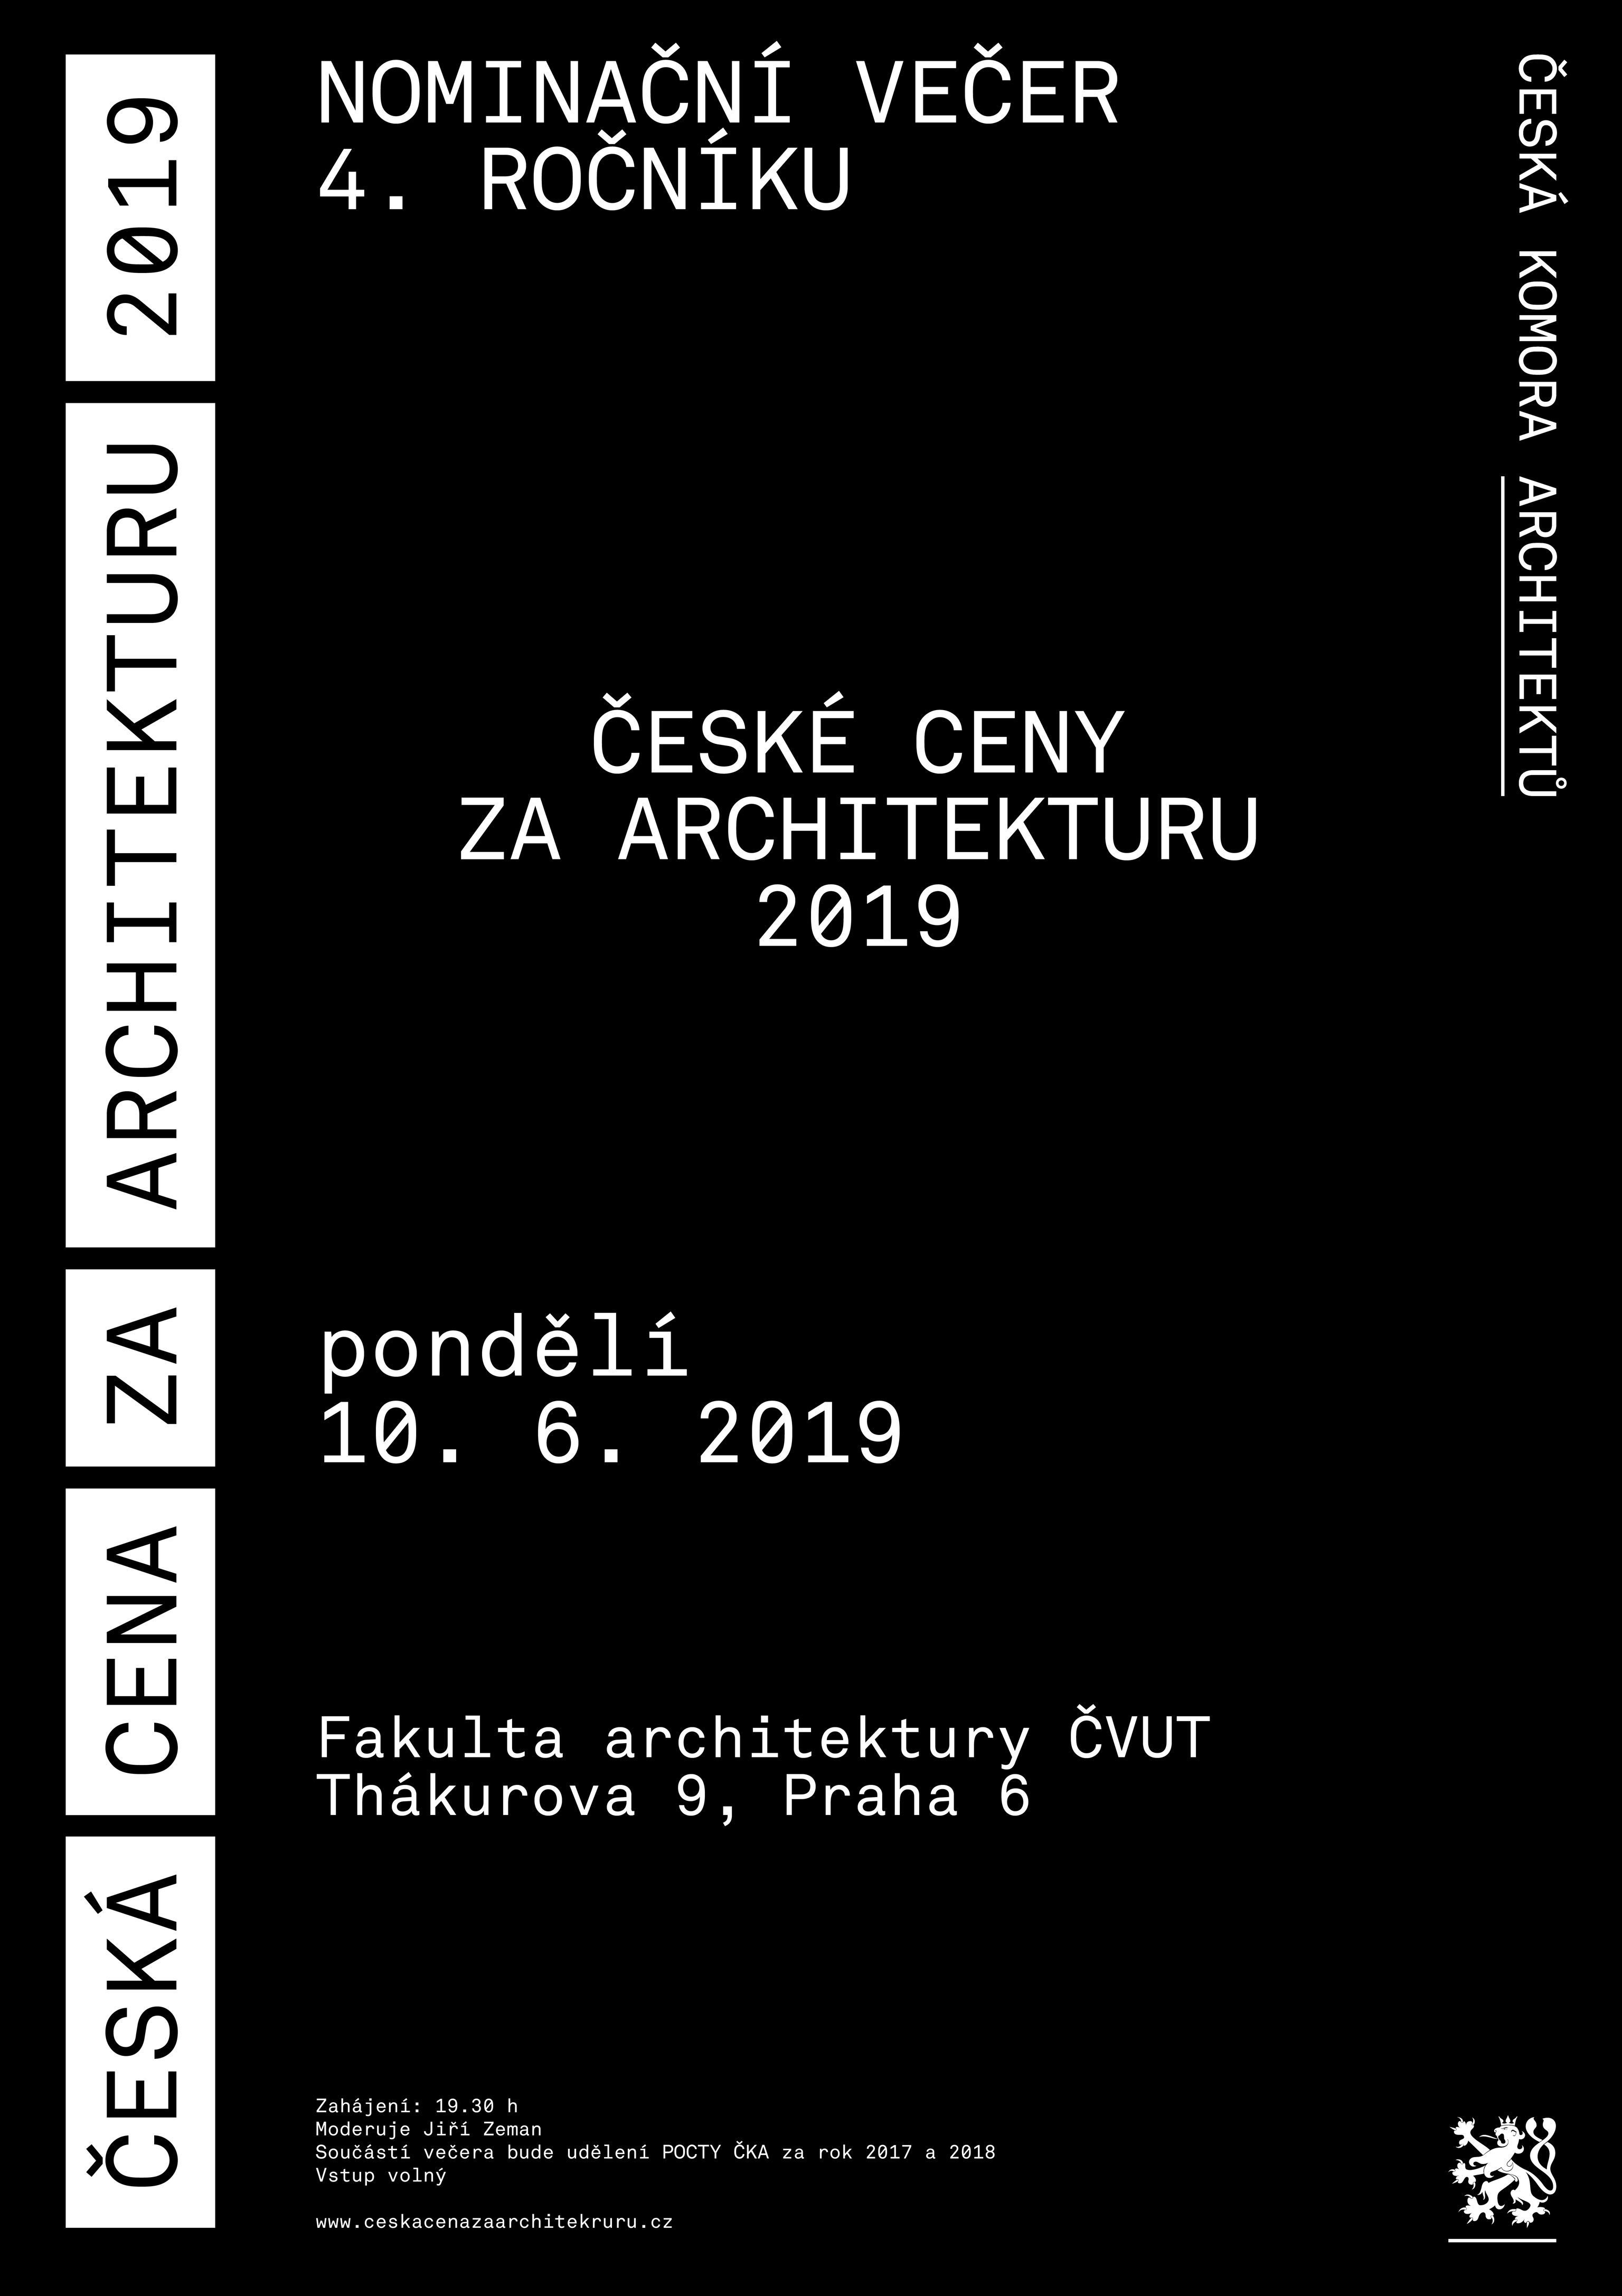 NOMINAČNÍ VEČER ČESKÉ CENY ZA ARCHITEKTURU 2019